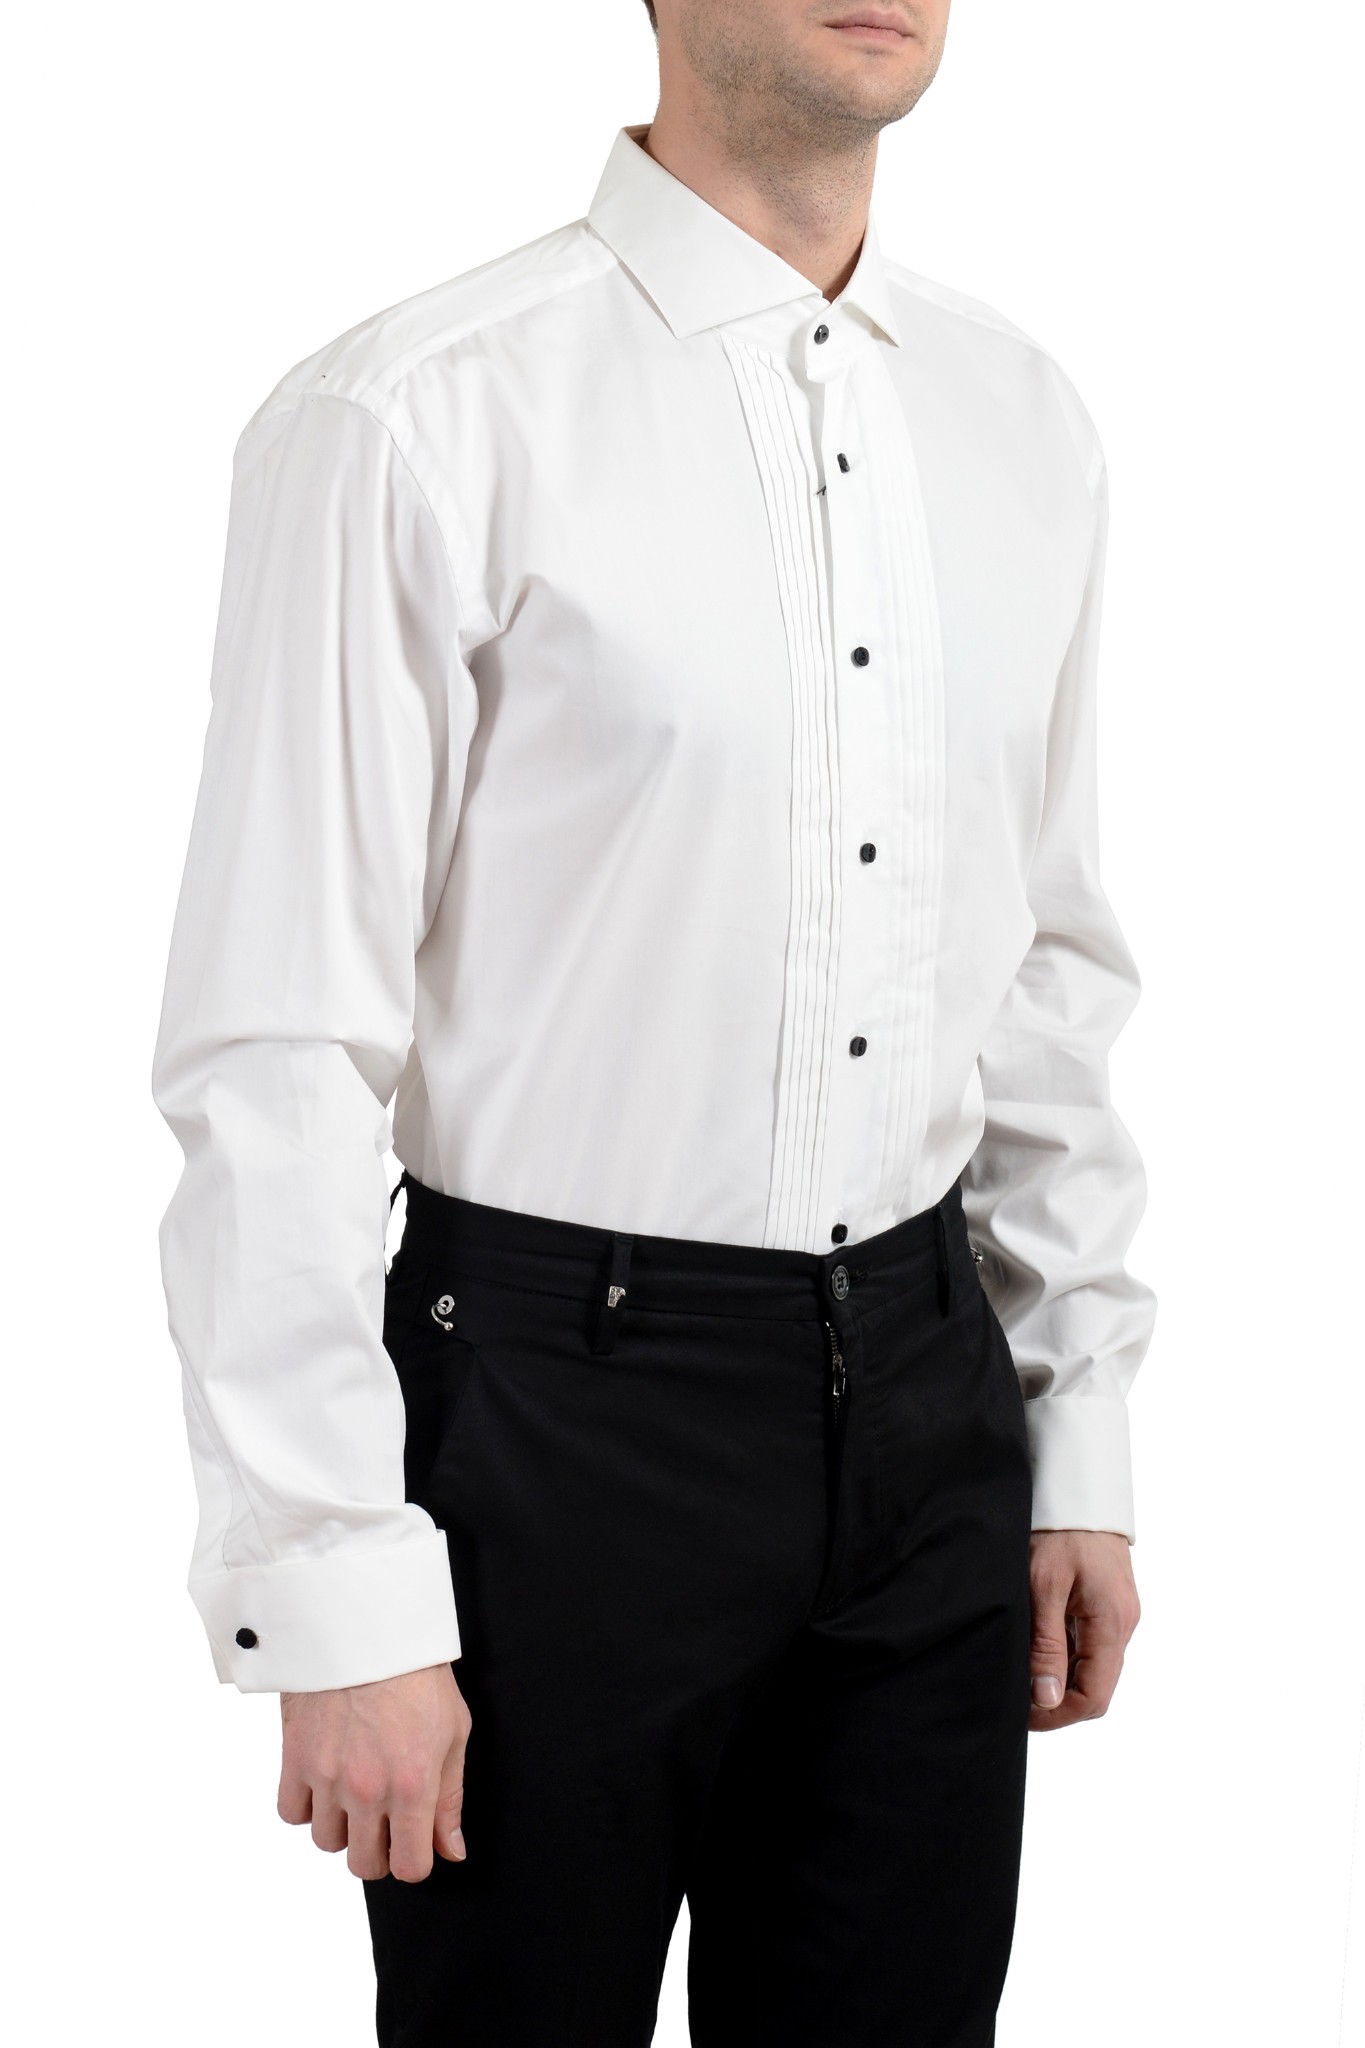 Hugo Boss "George" Men's Regular Fit White Long Sleeve Dress Shirt US